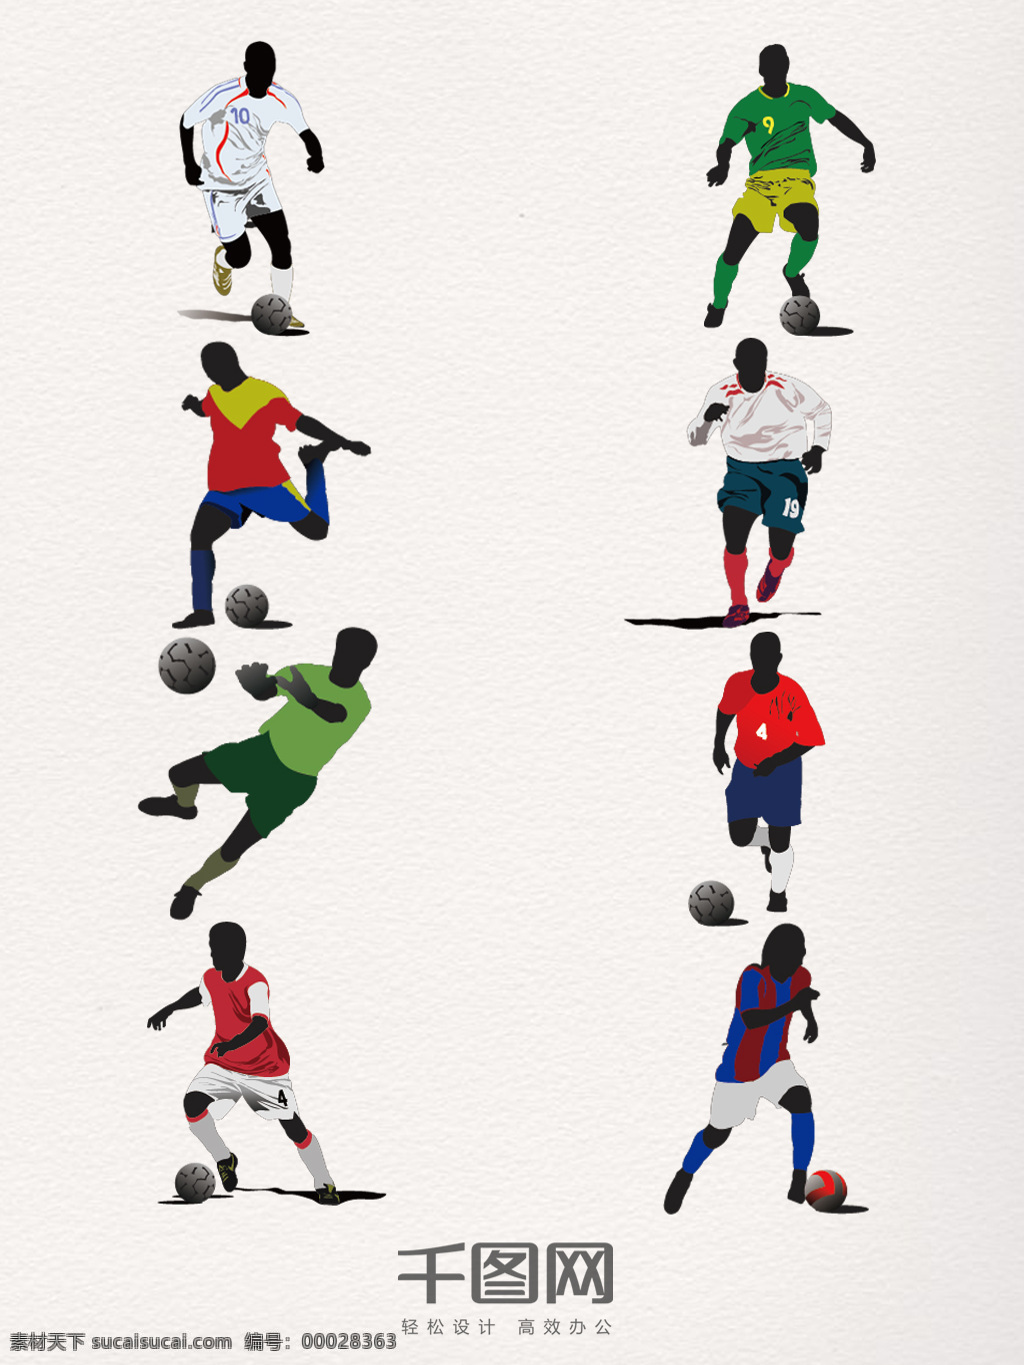 组 踢球 运动装 饰 图案 世界足球日 足球 运动 创意 手绘 简约 黑人 体育